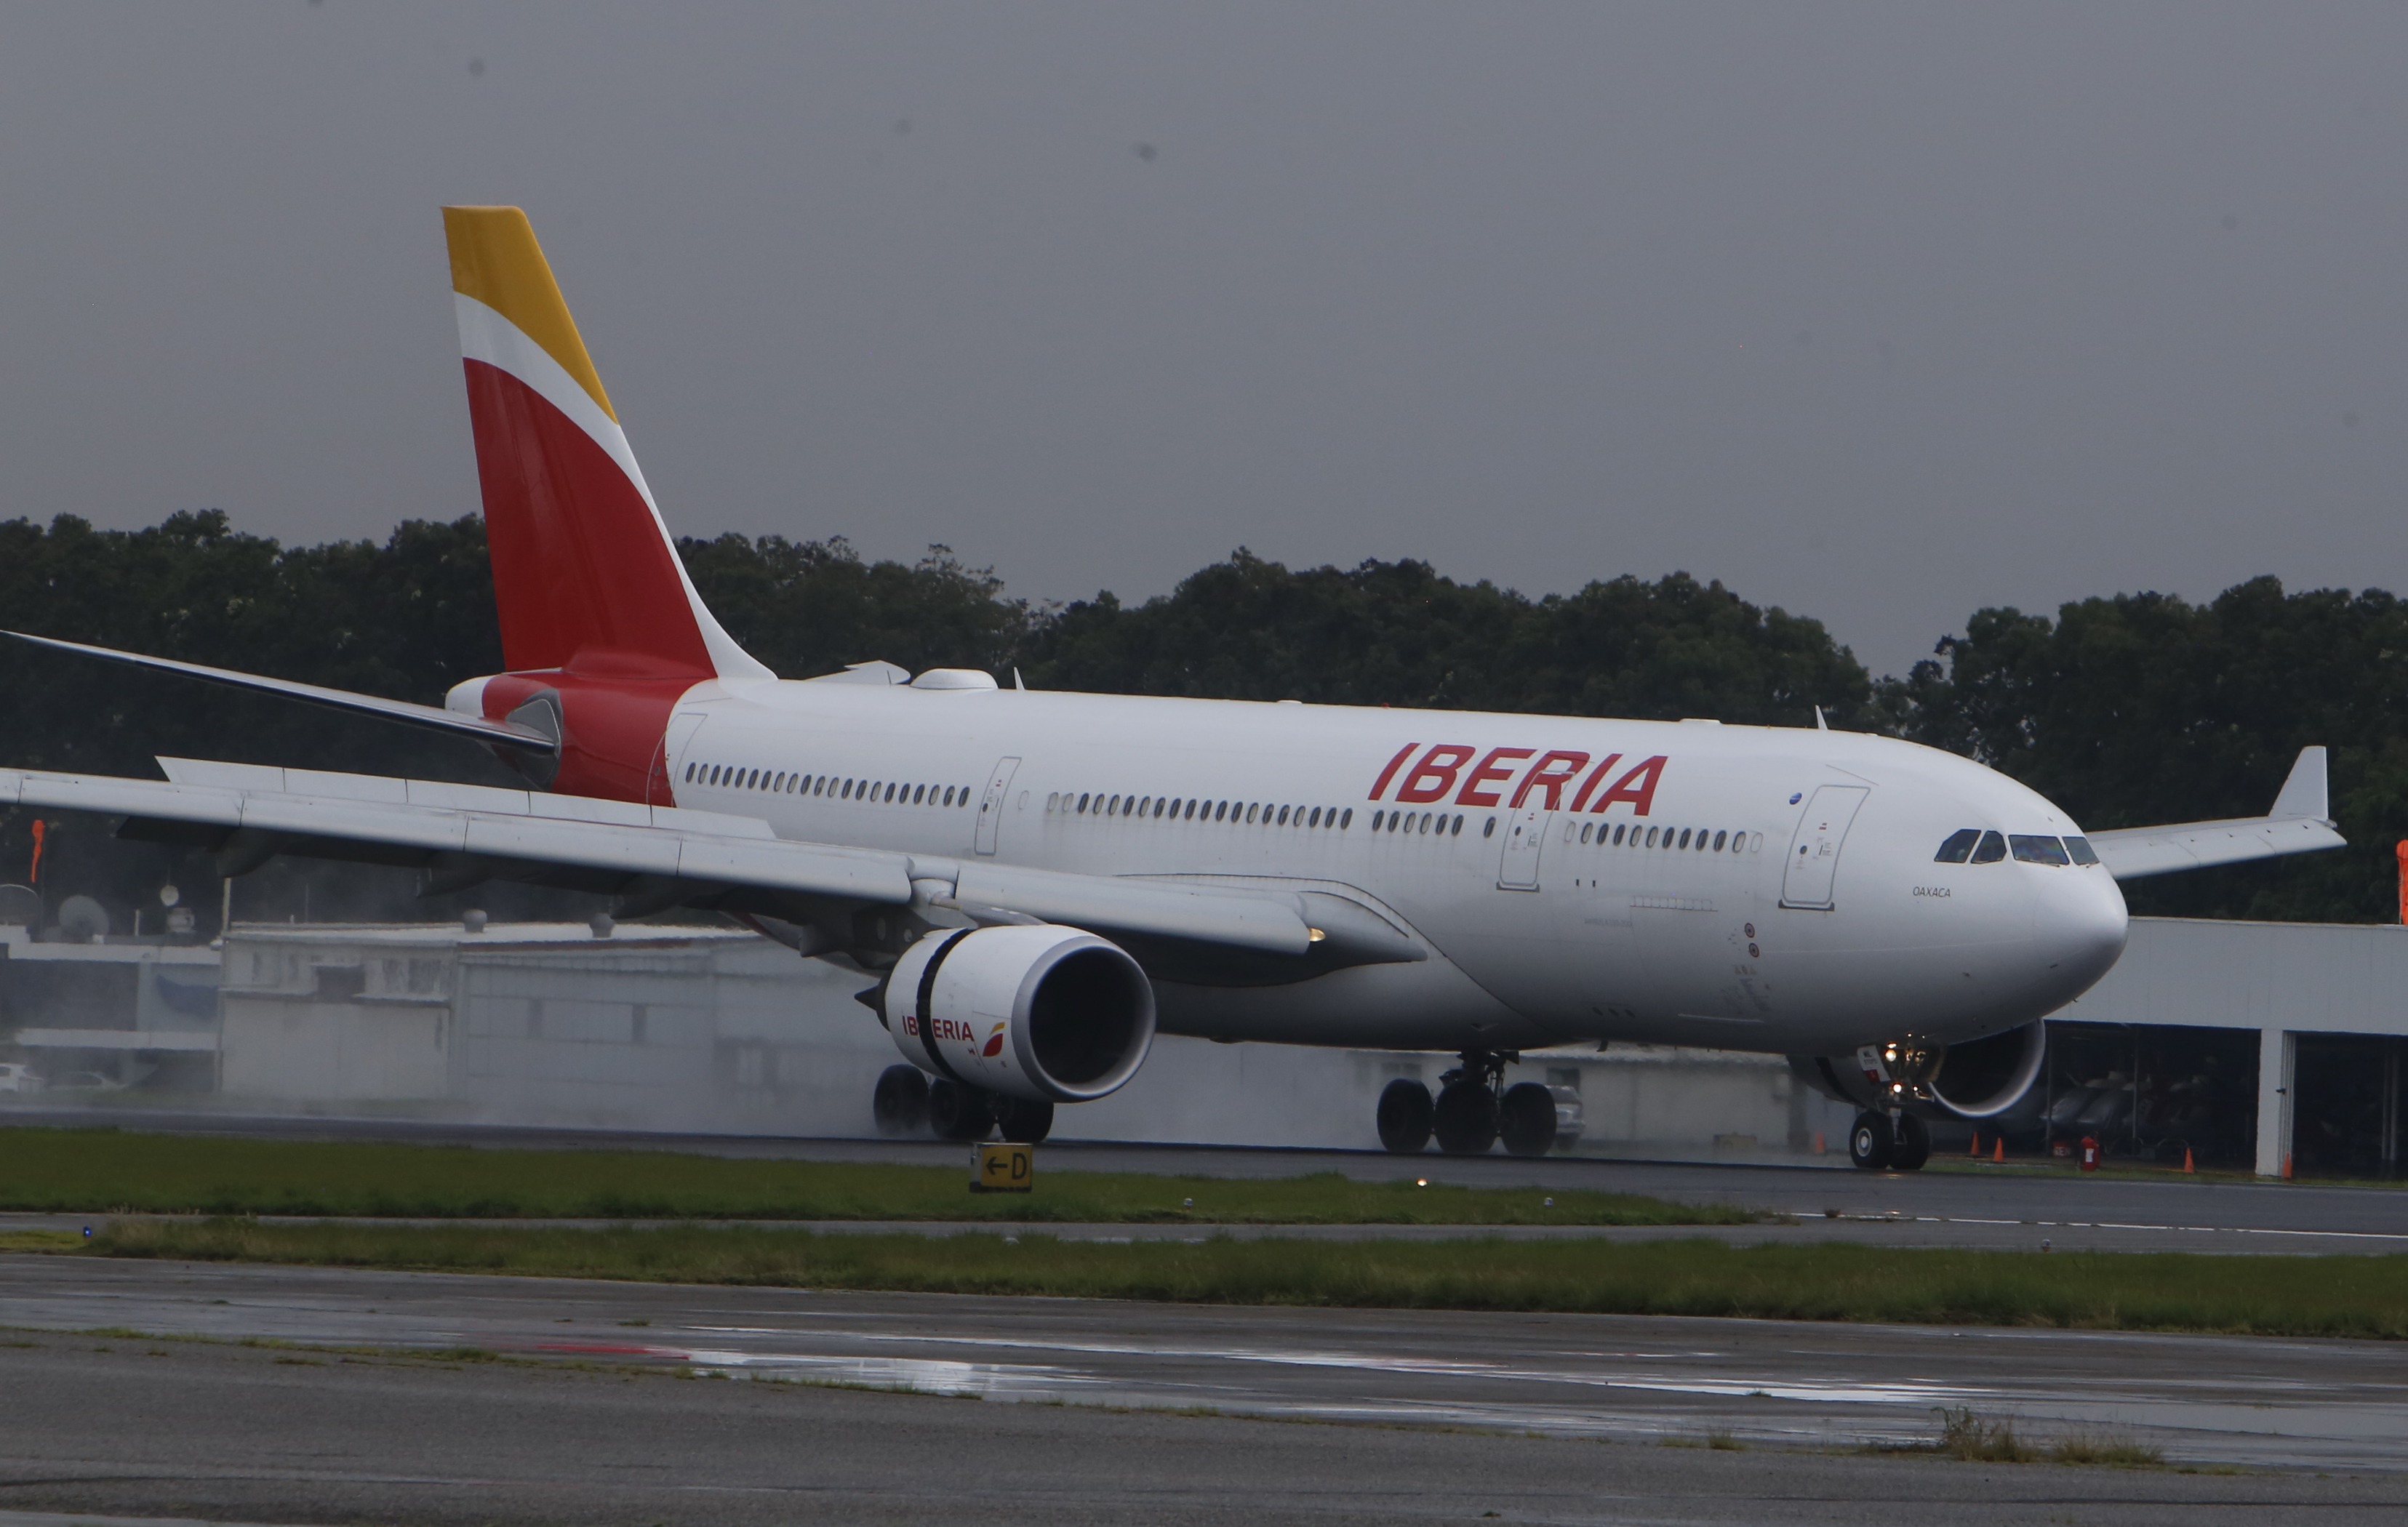 A partir del 12 de marzo la aerolínea española Iberia no enviará vuelos a Guatemala por medidas sobre el coronavirus. (Foto Prensa Libre: Hemeroteca)